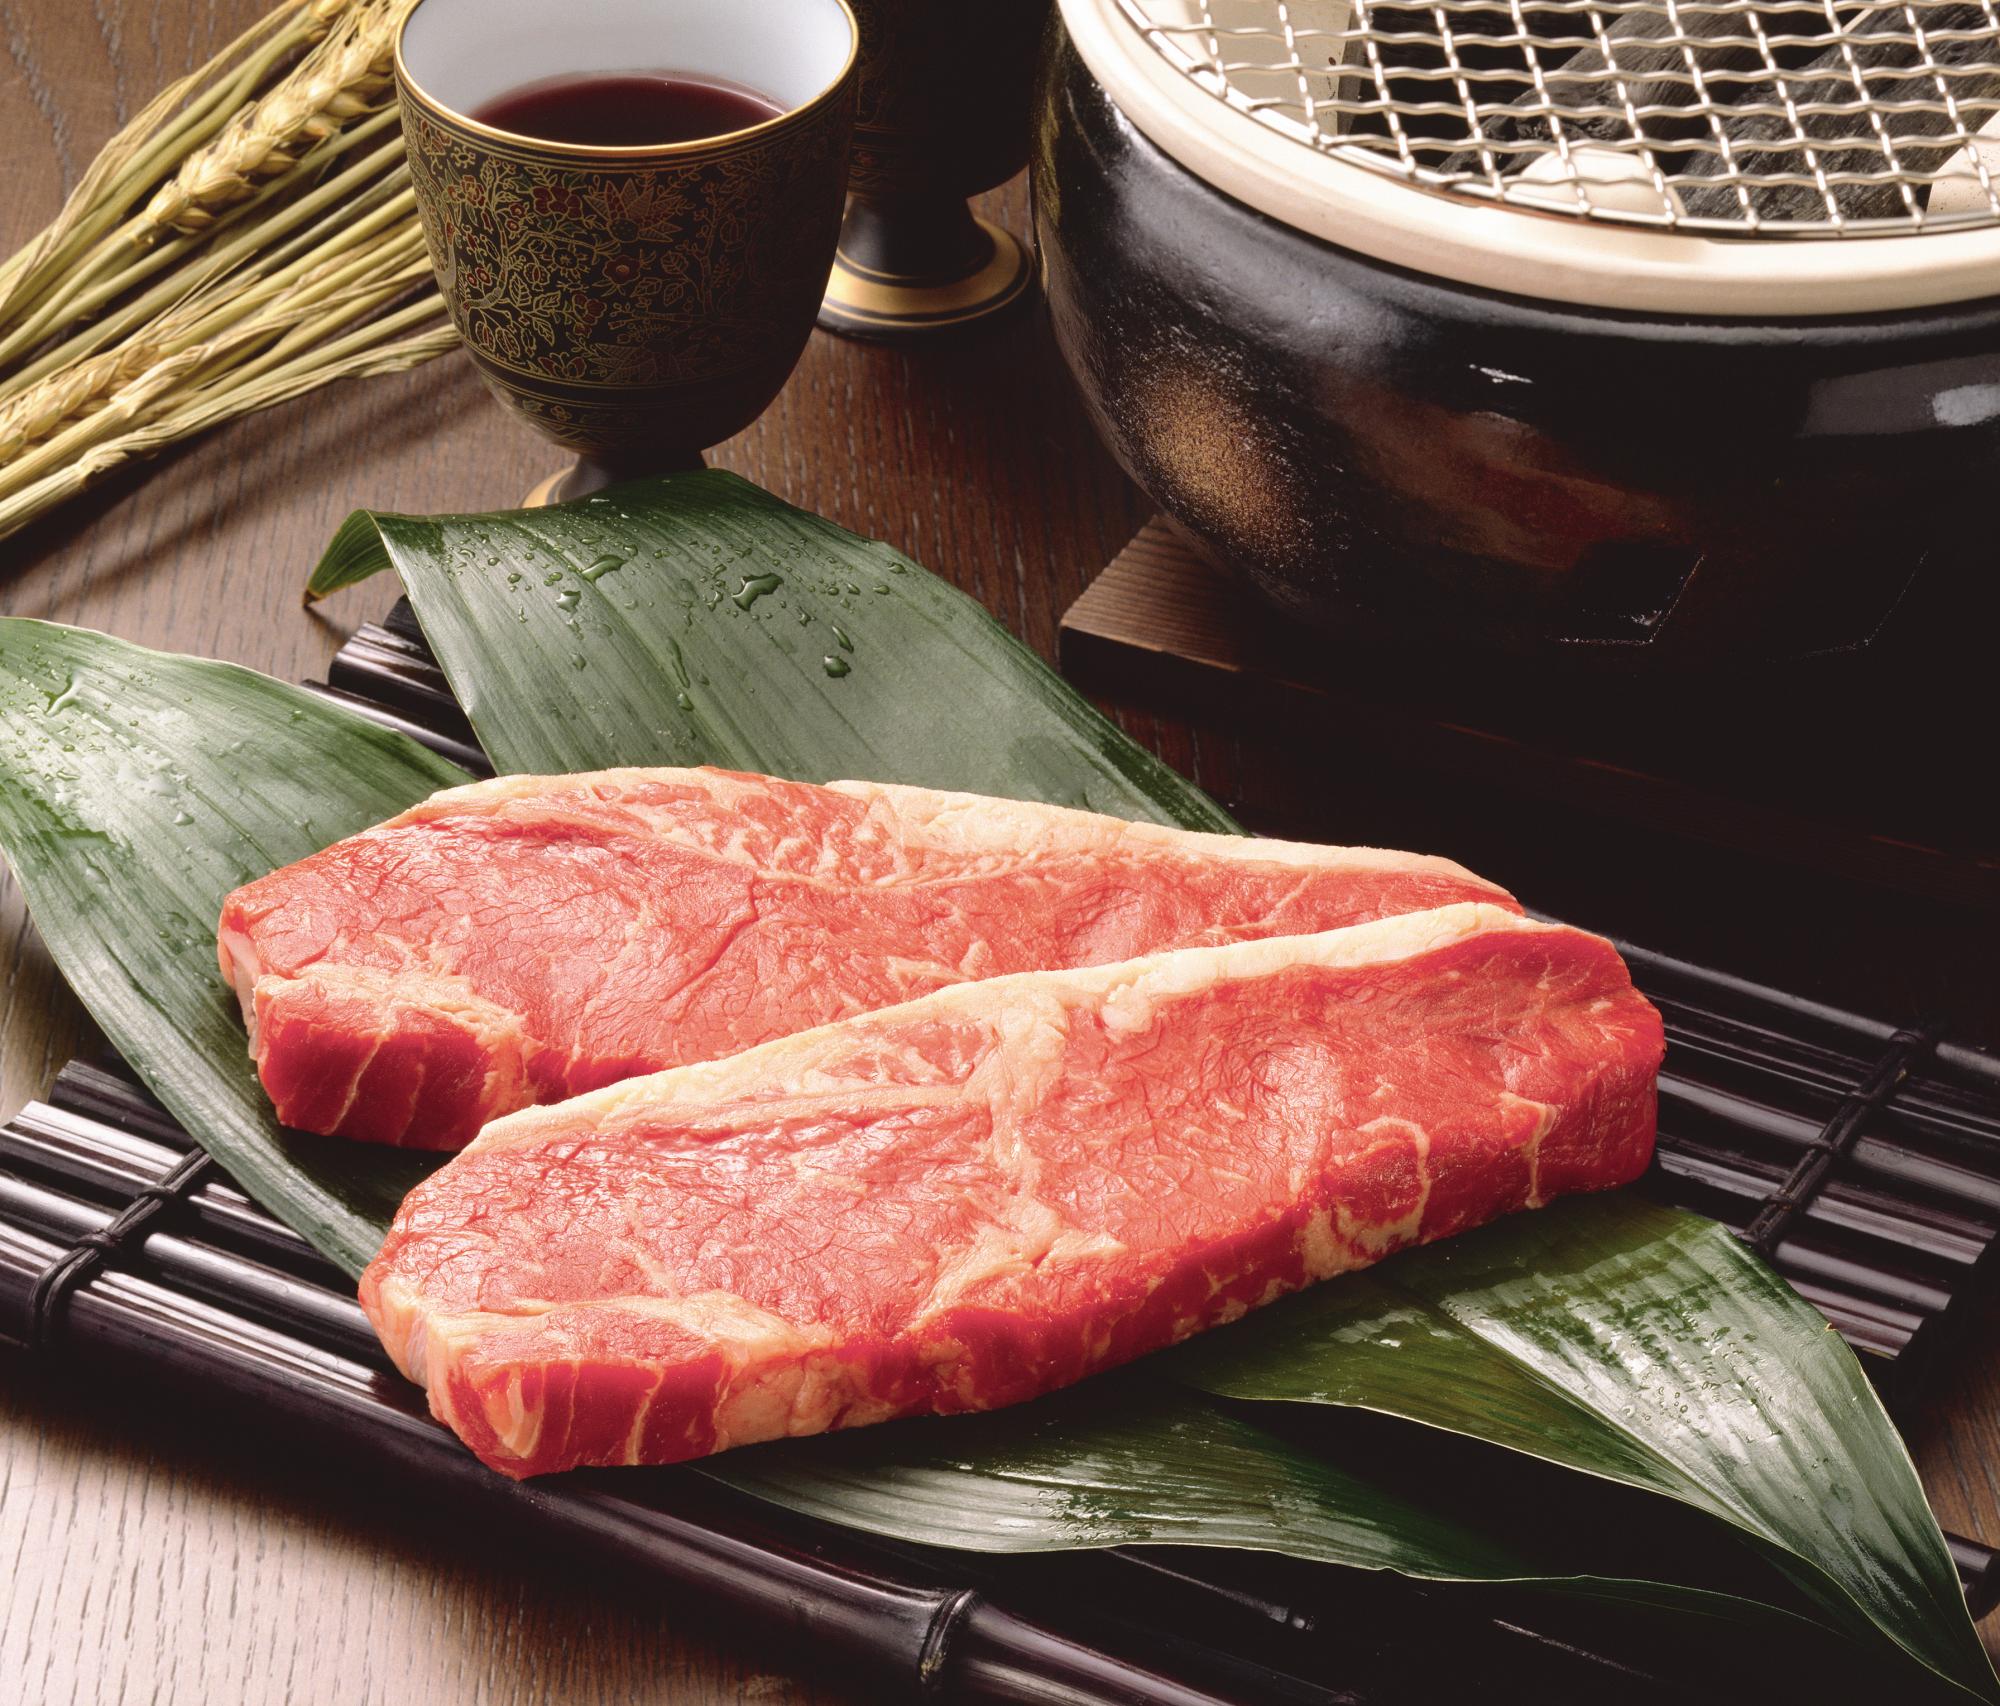 宮崎和牛ロースステーキ＆すき焼肉 ステーキ200g×2、すき焼き肉450g×2 190×260×70mm